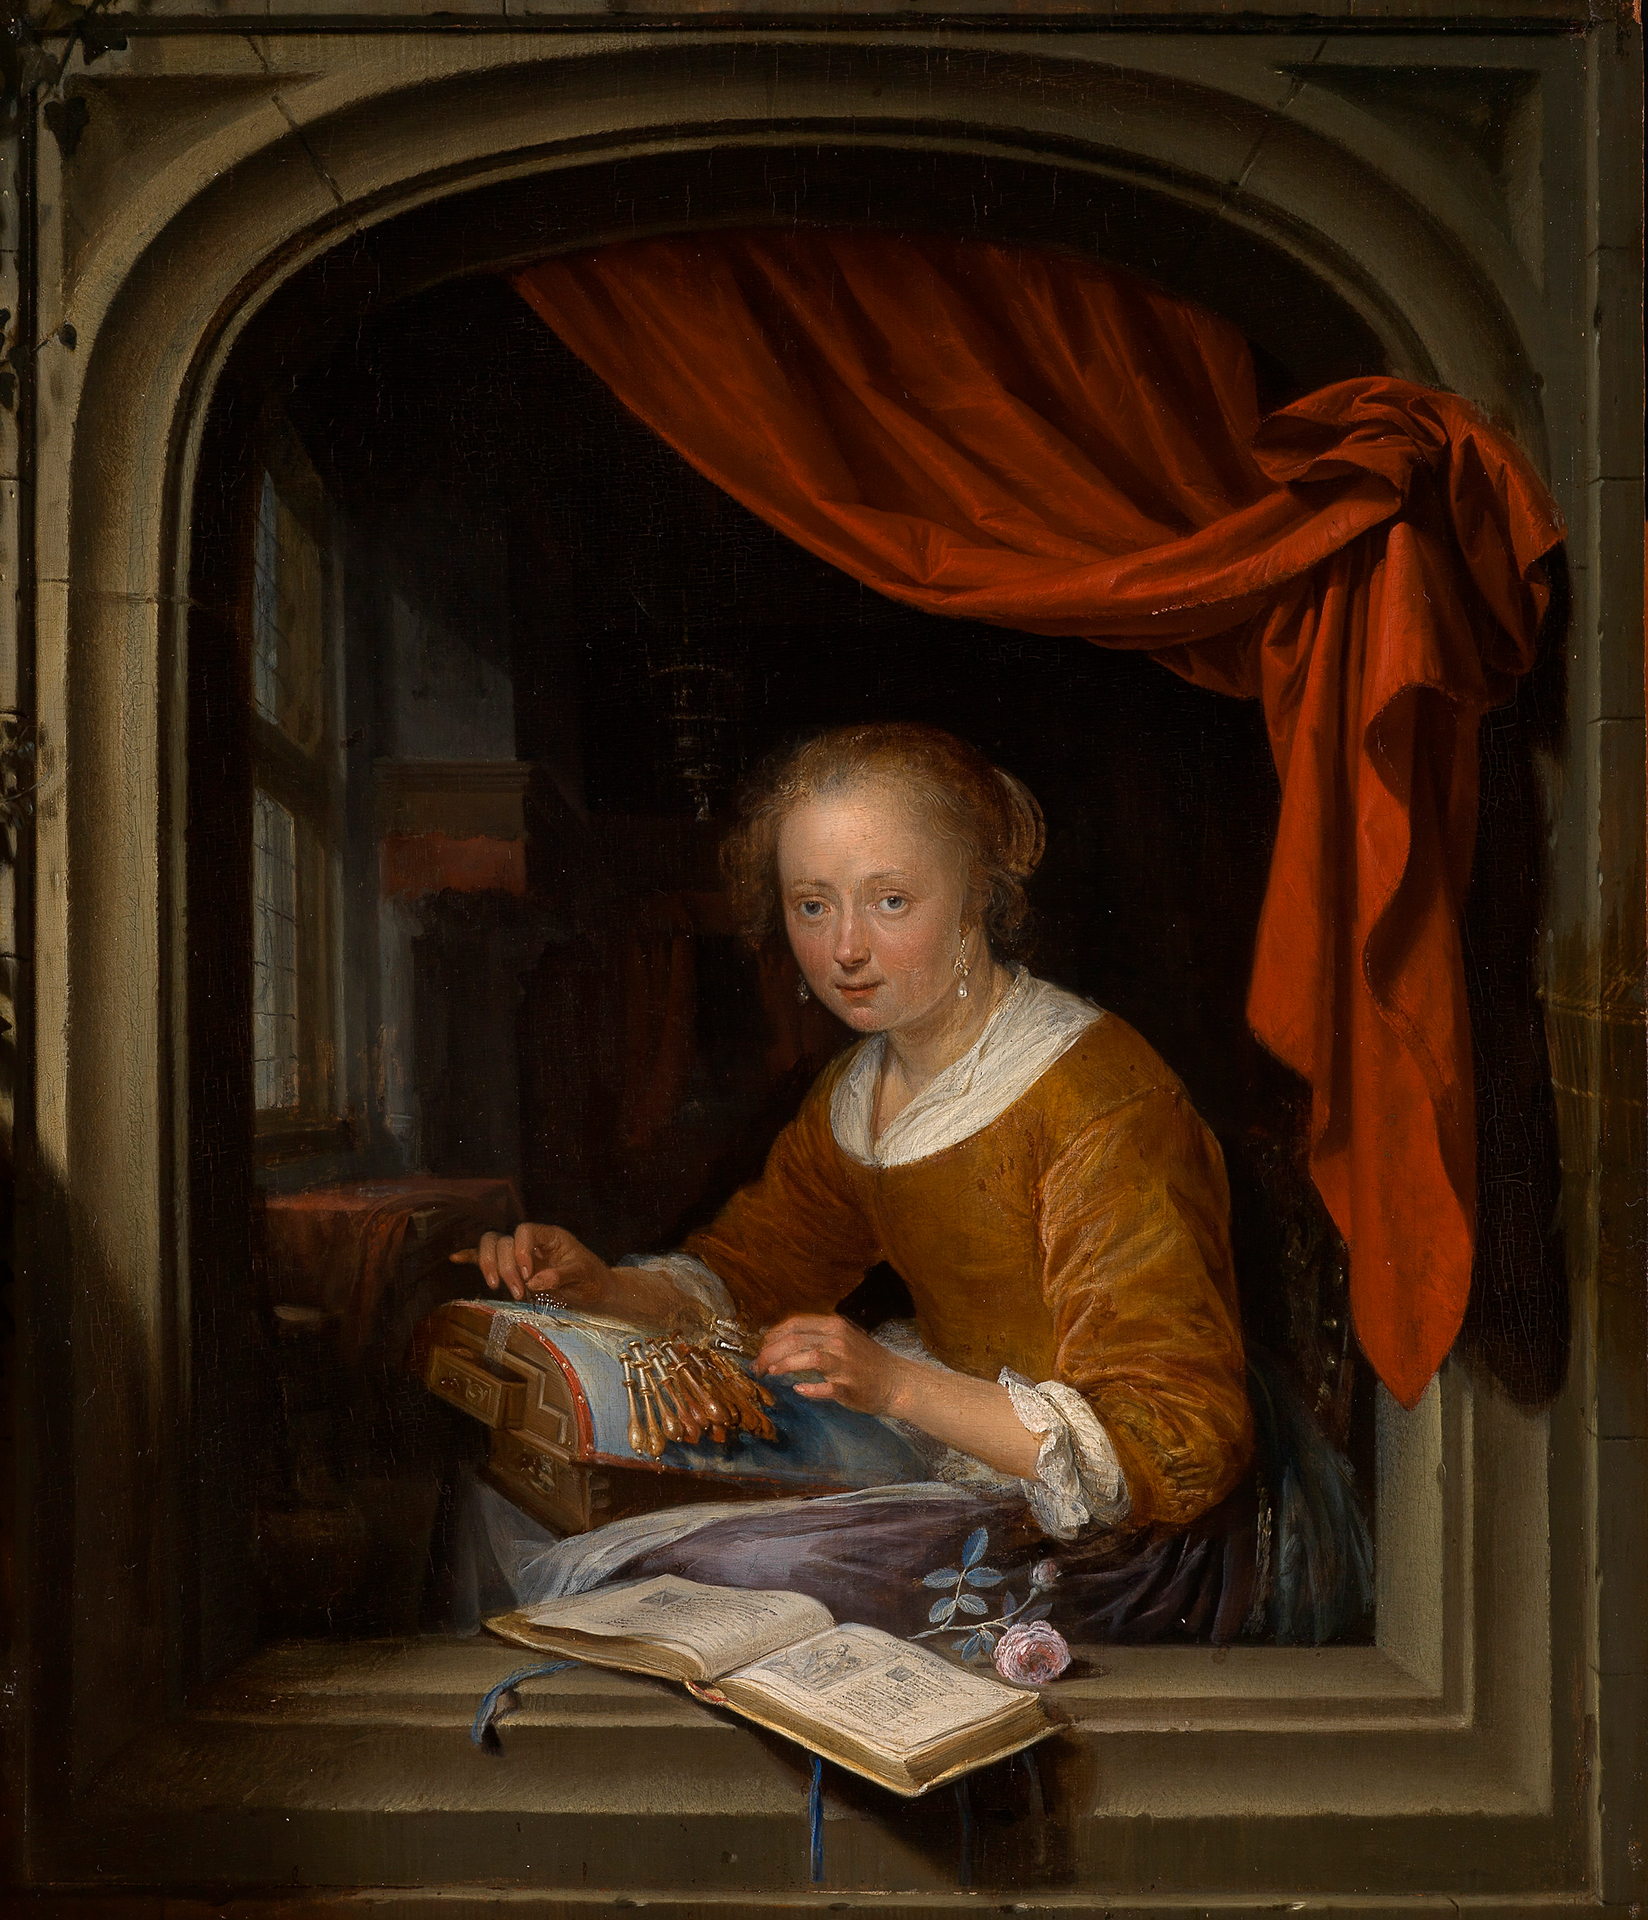 In einer steinernen Wandnische mit beiseitegeschobenem rotem Vorhang der Blick in ein Zimmer. Eine junge Frau hat eine Klöppelarbeit auf den Knien und blickt aus dem Bild heraus. Auf der Brüstung eine Blume und ein Buch.